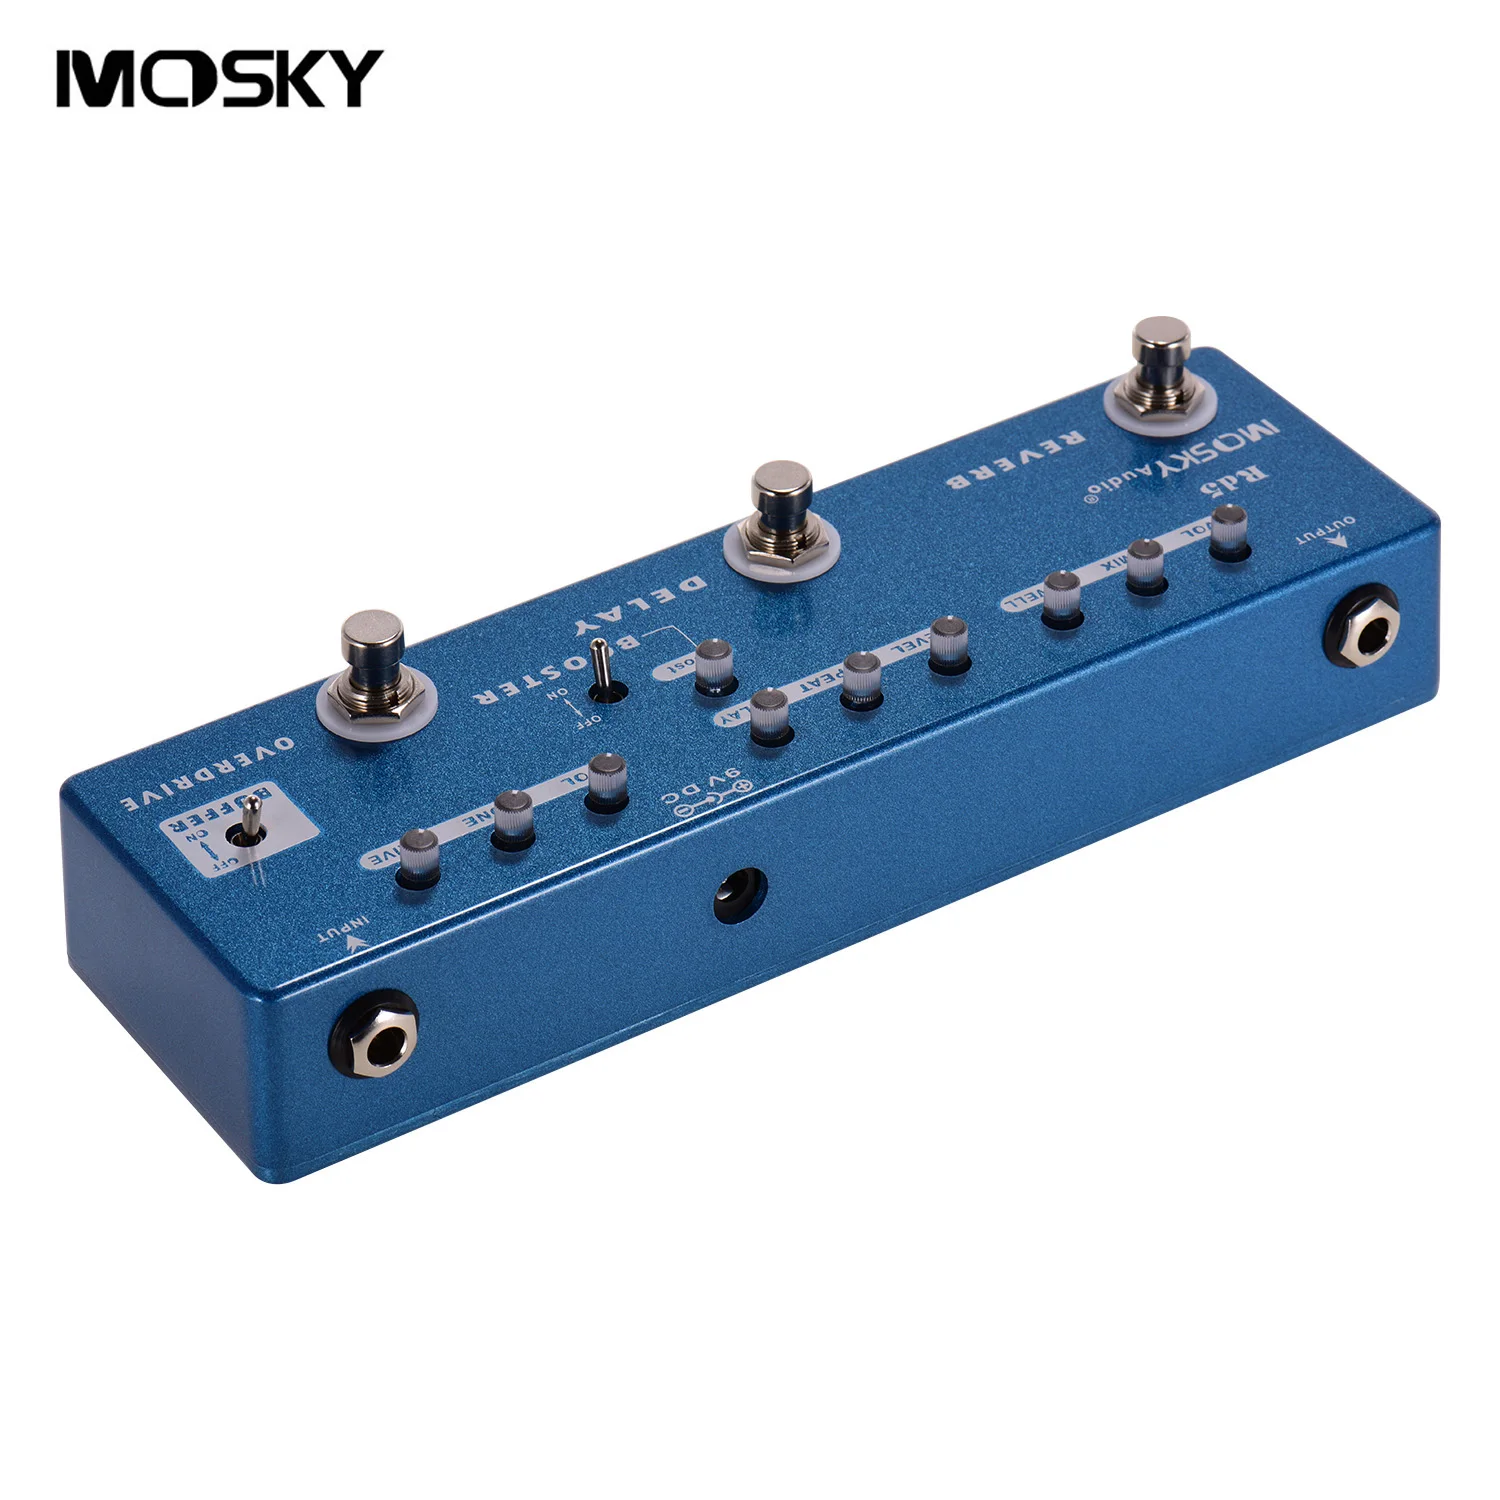 

MOSKY RD5 5-в-1 гитары мульти-педали эффектов реверберации + задержка + Booster + Overdrive + буфера металлический корпус для гитары Запчасти